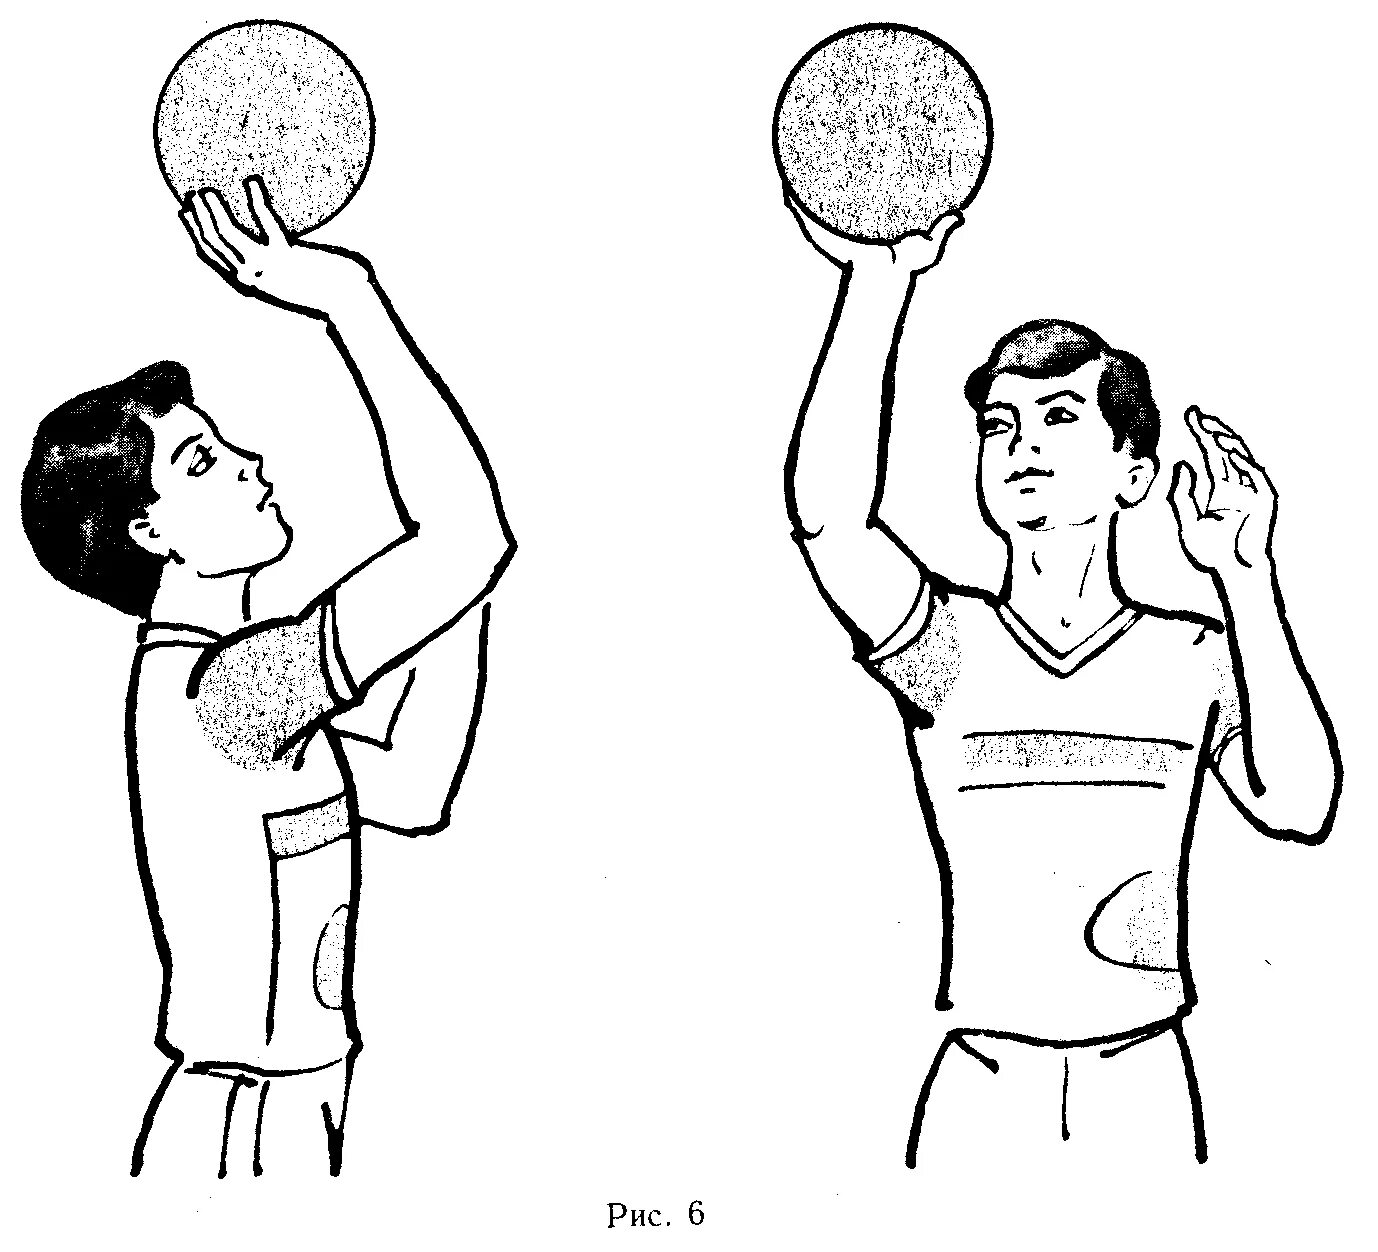 Прием снизу двумя руками в волейболе. Прием мяча снизу двумя руками в волейболе. Техника передач мяча в парах сверху и снизу. Волейбол. Передача снизу в волейболе. Правильная игра в волейбол